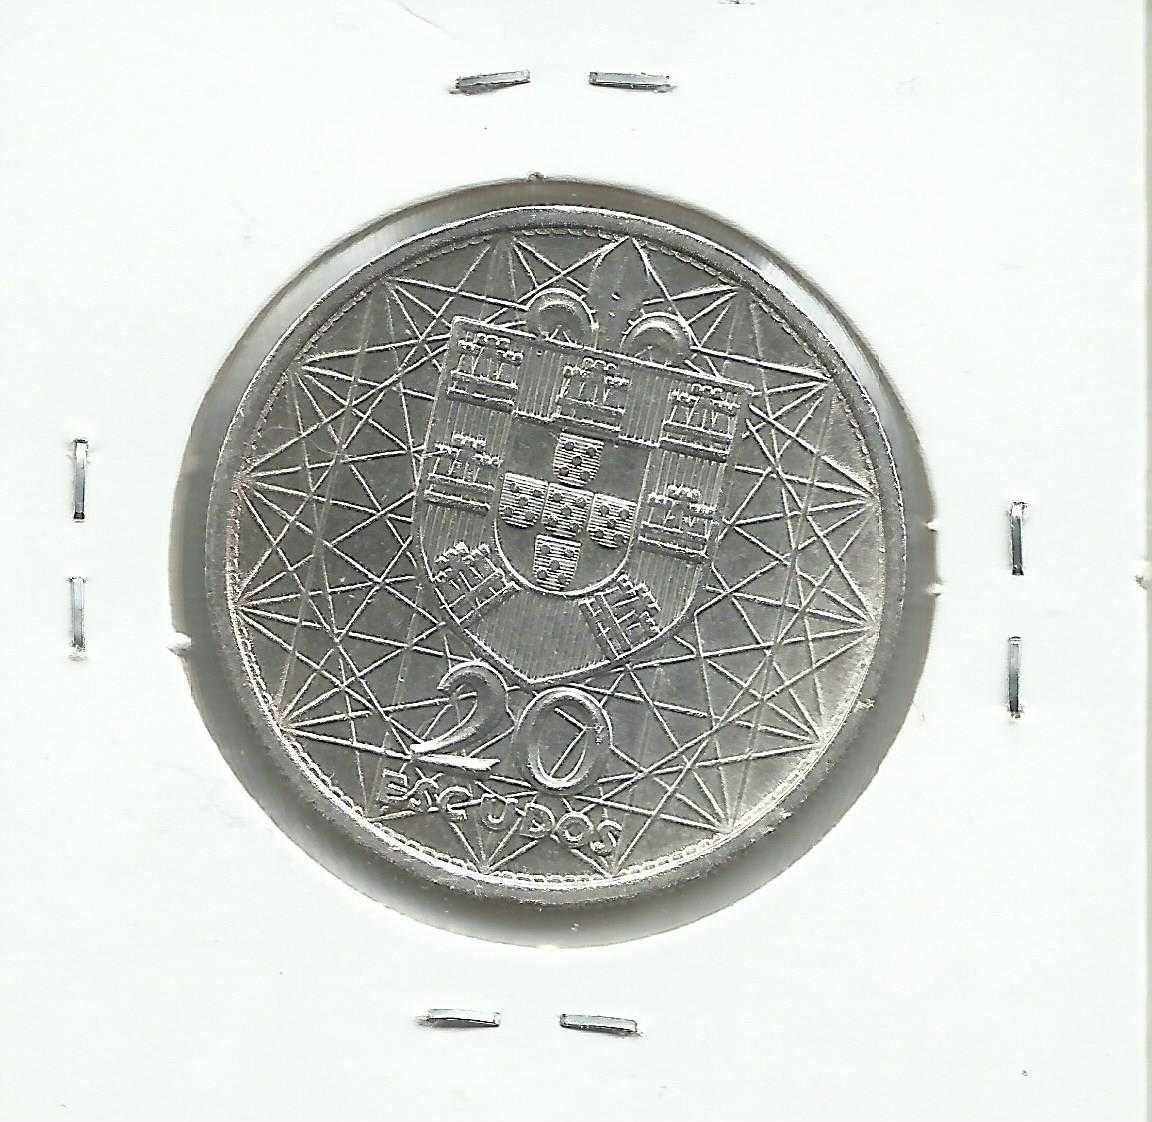 3 moedas portuguesas comemorativas de 20 escudos - Prata